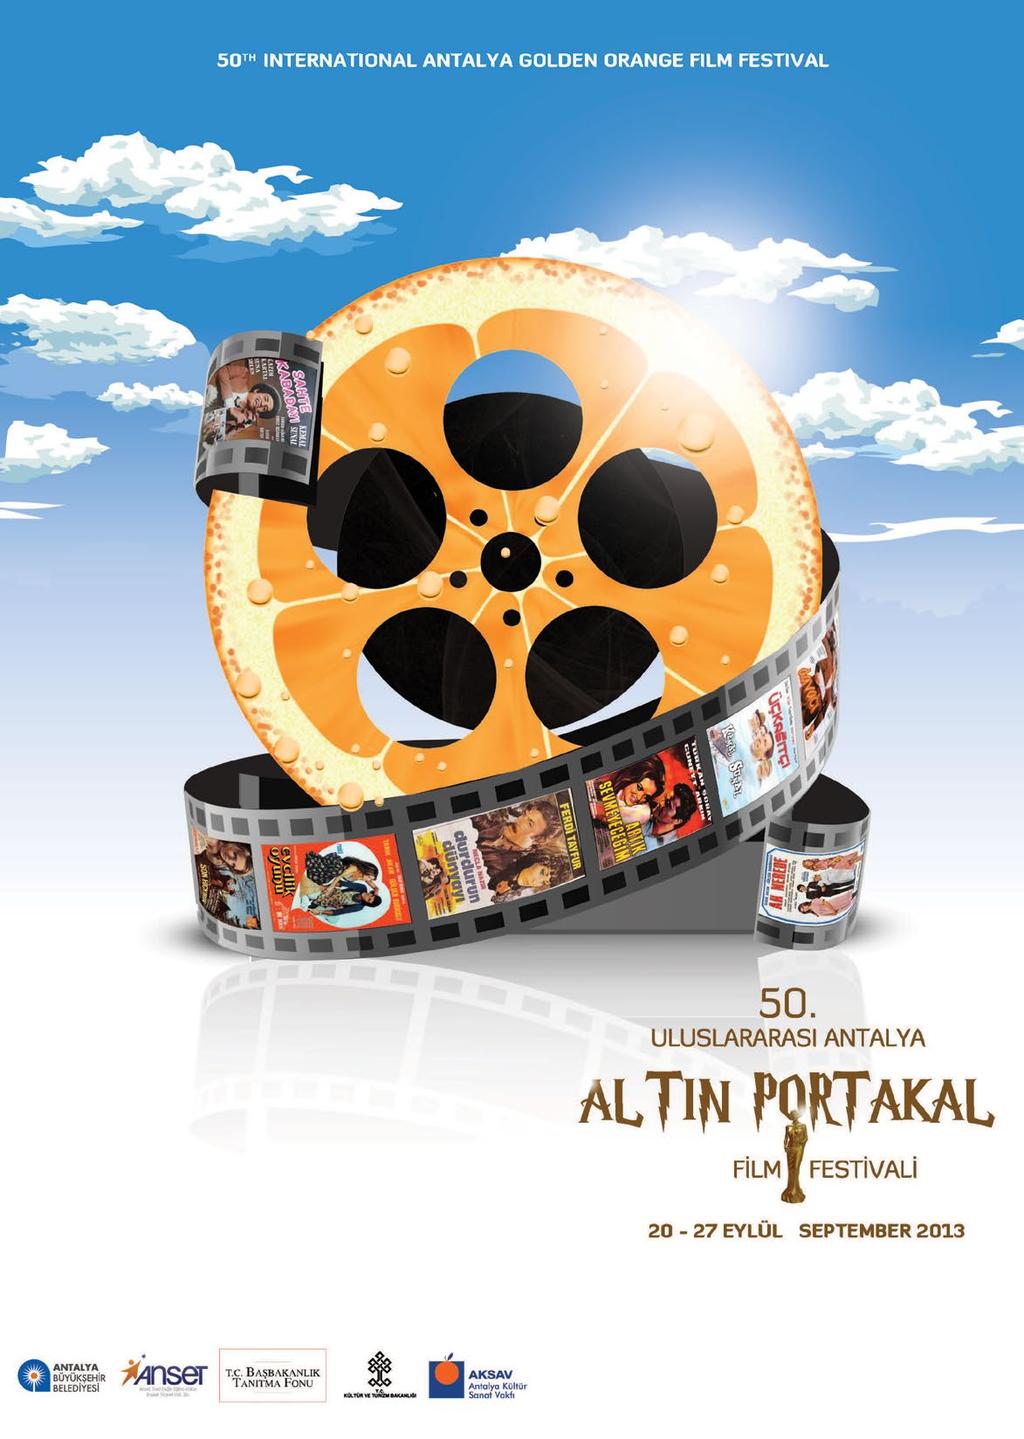 50. Altın portakal film festivali yarışması için